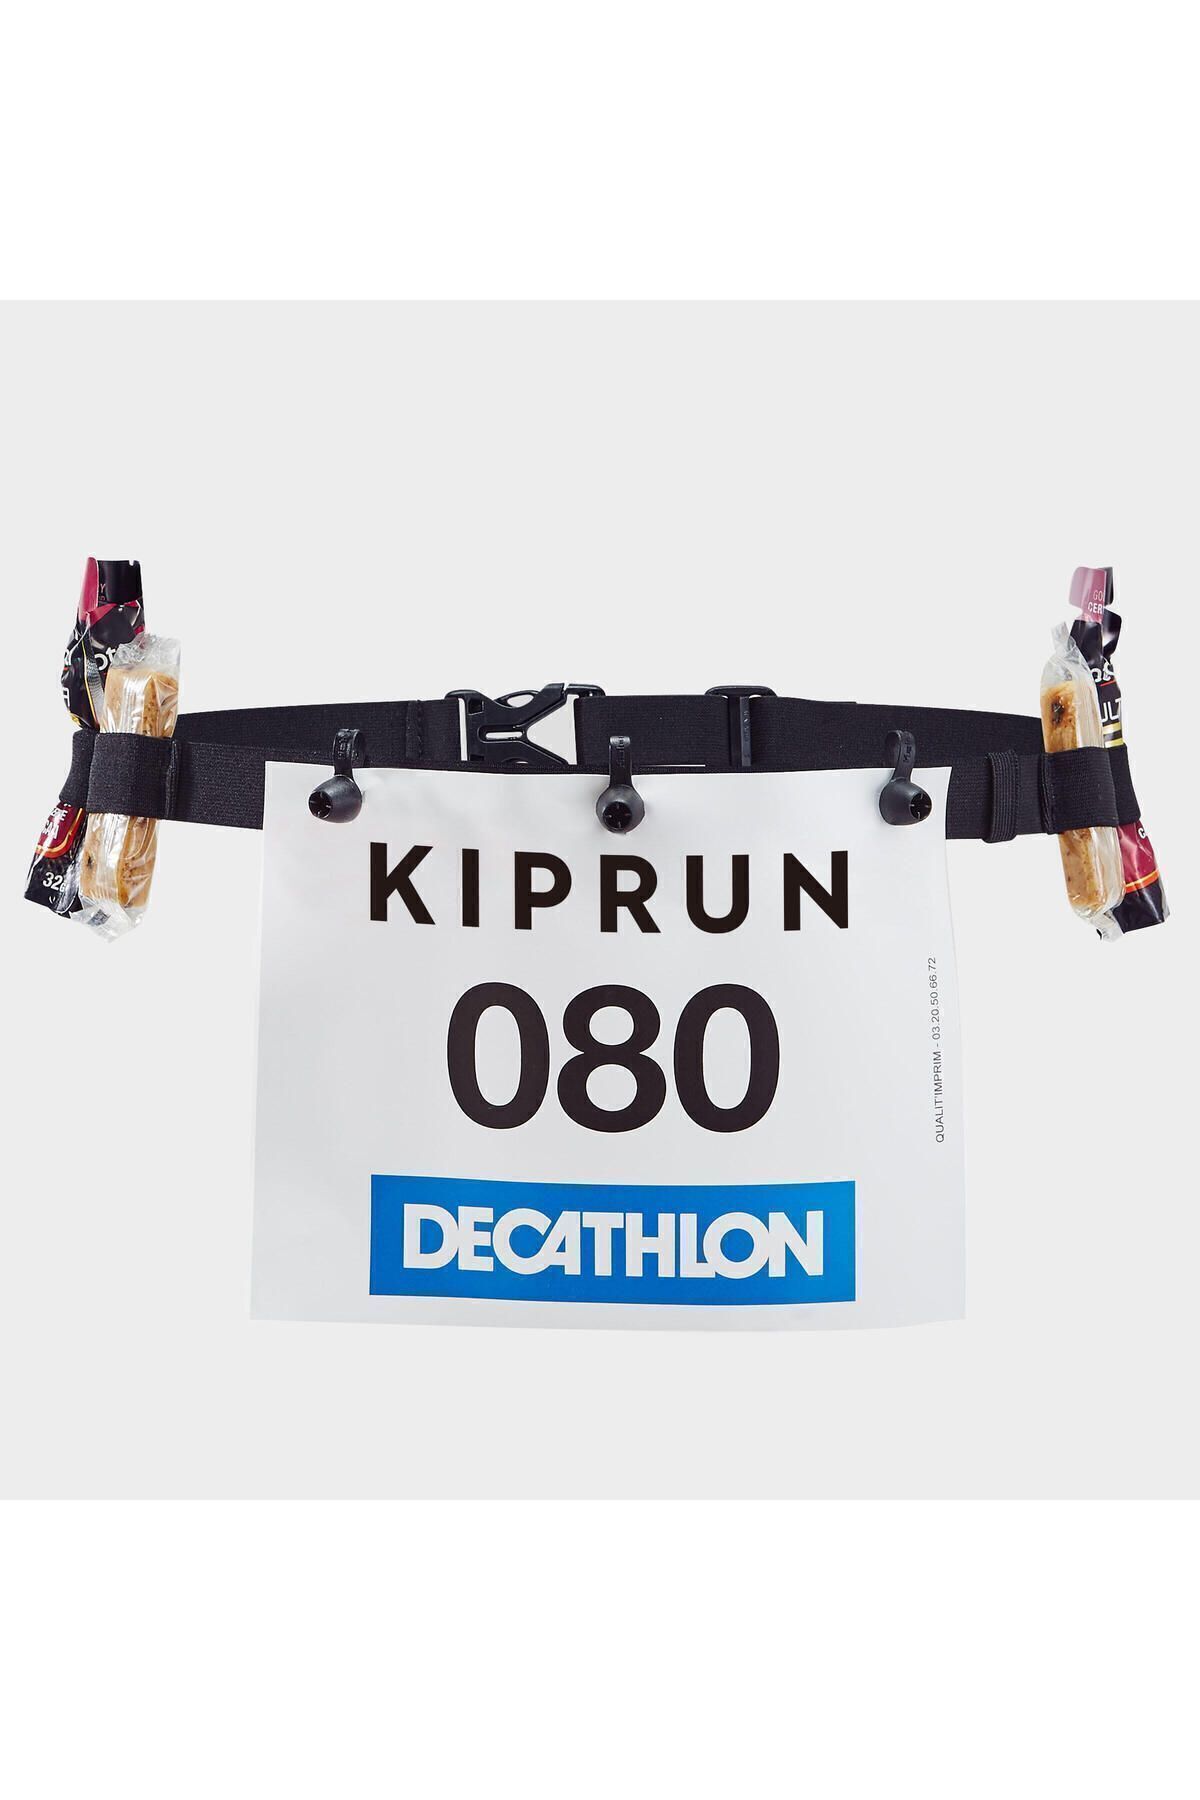 Decathlon Kiprun Siyah Koşu Yarış Numarası Taşıma Kemeri 8488150